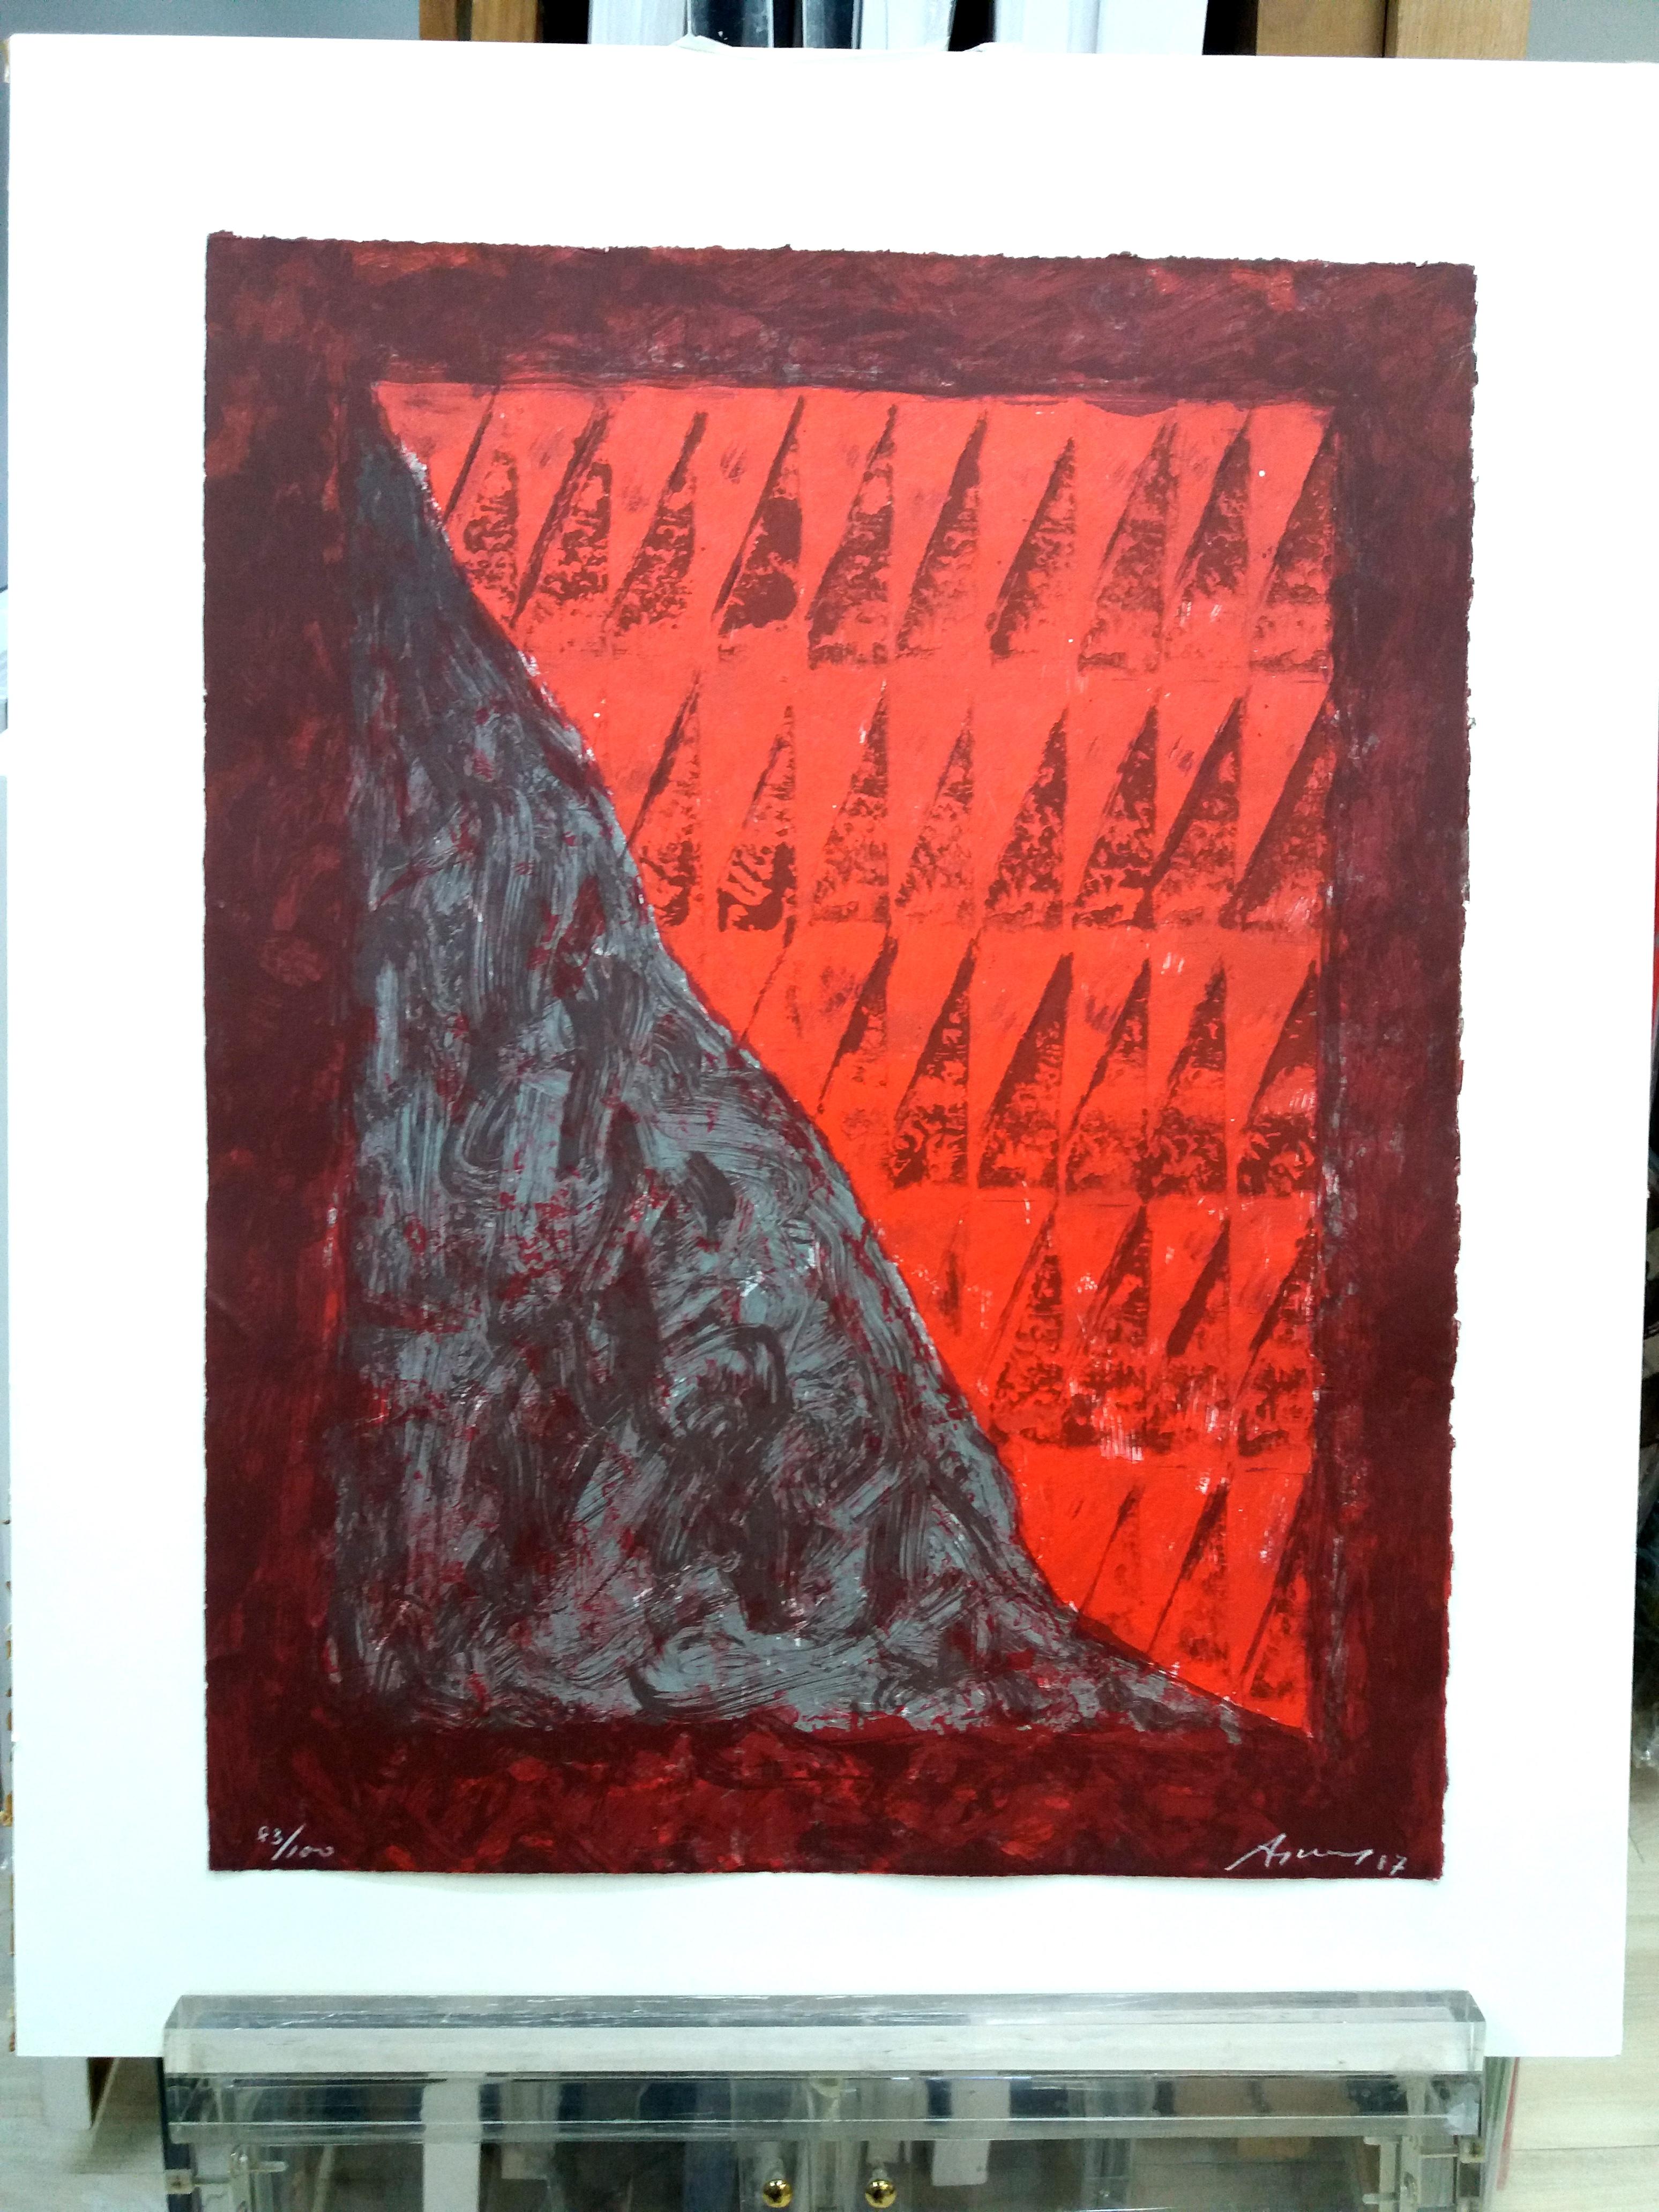 Argimon  Rot und Brown, Vertikal,  Original-Lithographie-Gemälde (Abstrakt), Print, von Daniel Argimon